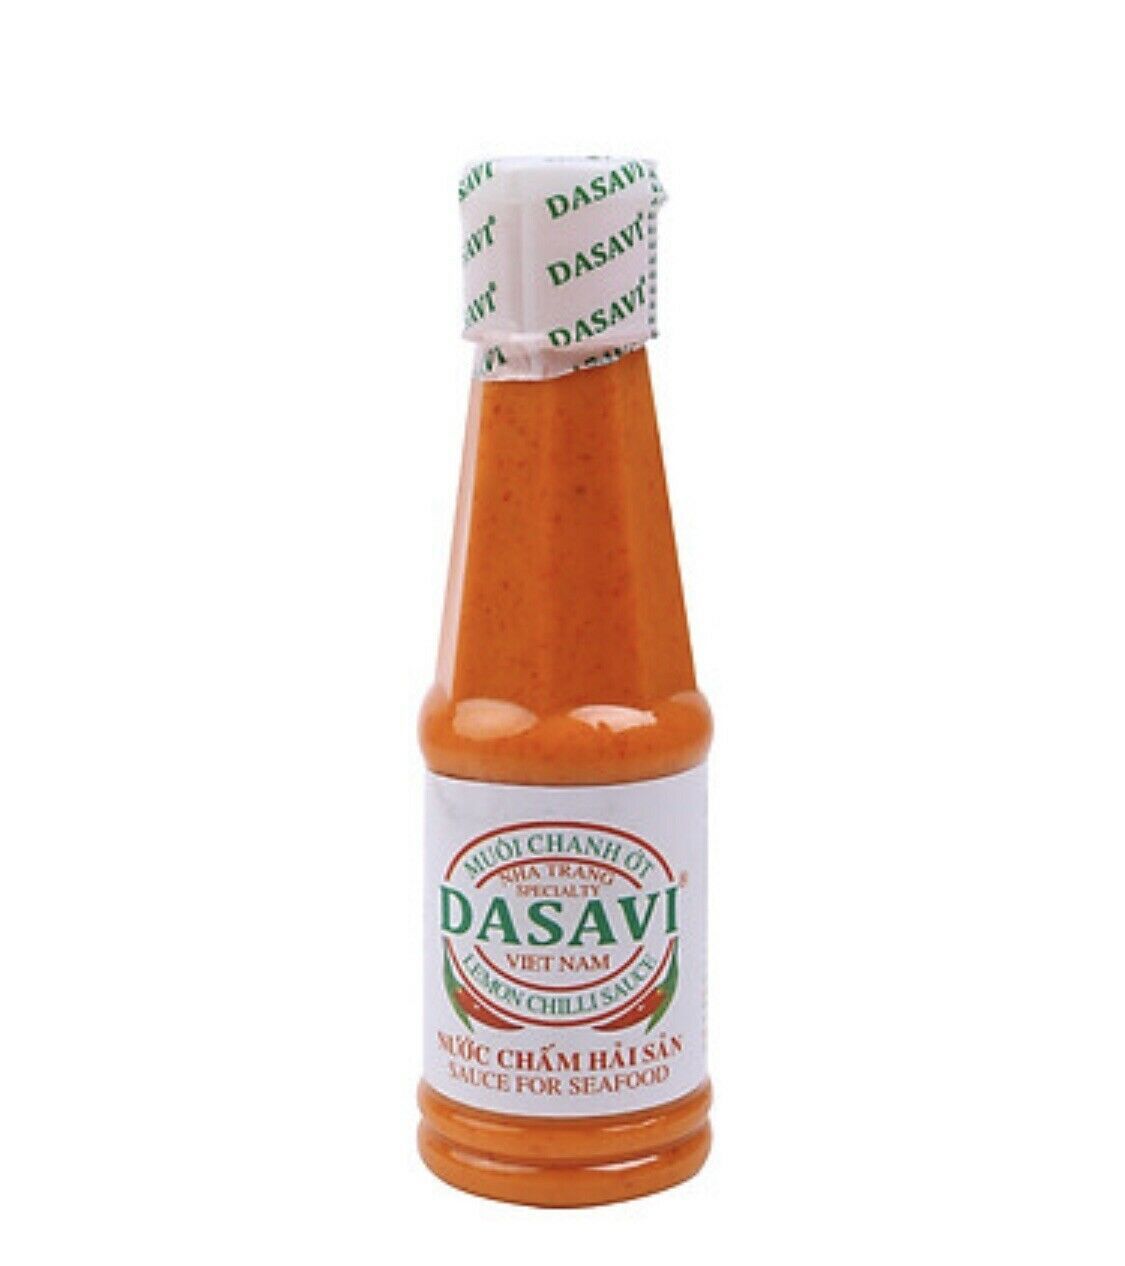 Dasavi Chili Sauce | Muoi Ot Do | 9.2 oz